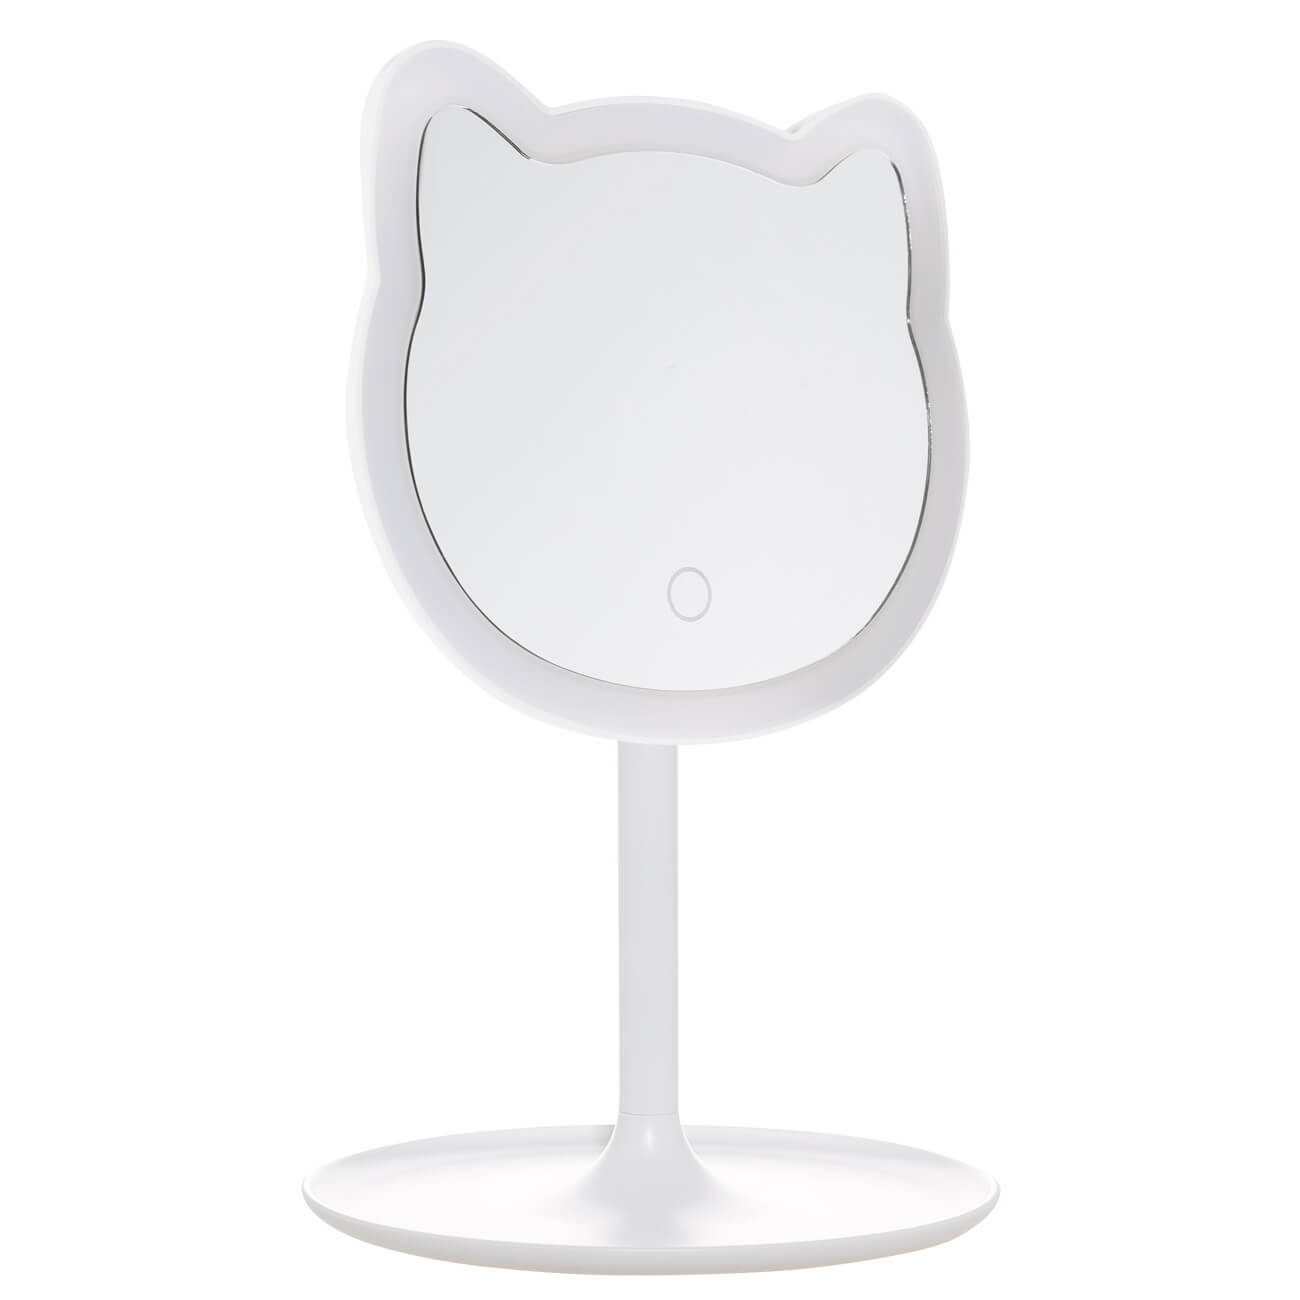 Зеркало настольное, 29 см, с подсветкой, на подставке, пластик, белое, Кот, Cat разбрызгиватель daewoo круговой на подставке